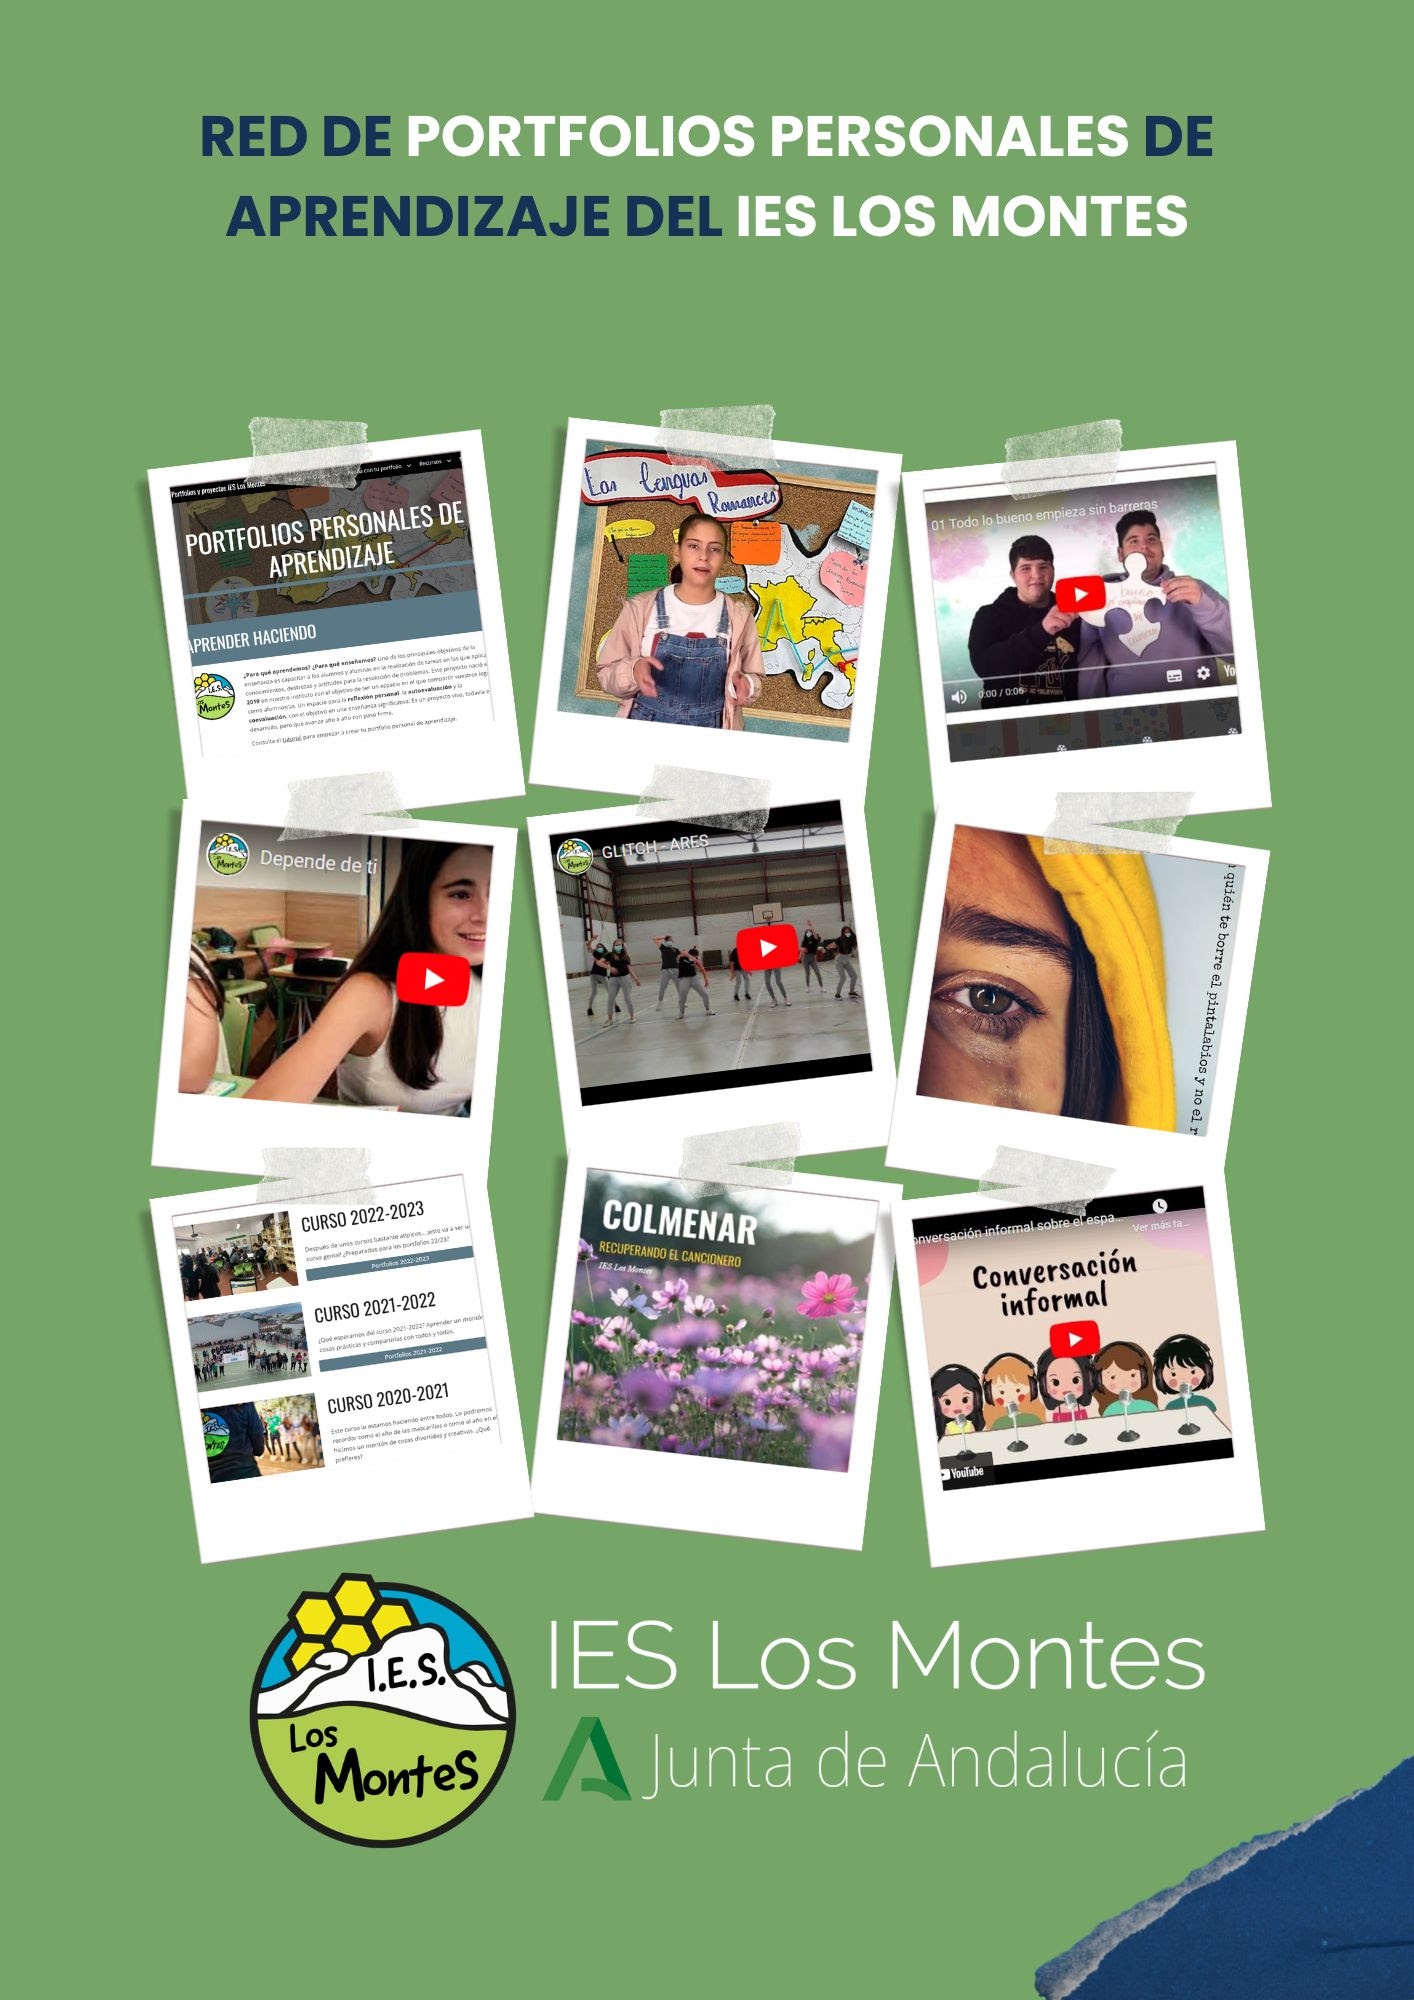 La red de portfolios de aprendizajes del IES Los Montes es recocida como experiencia educativa de éxito